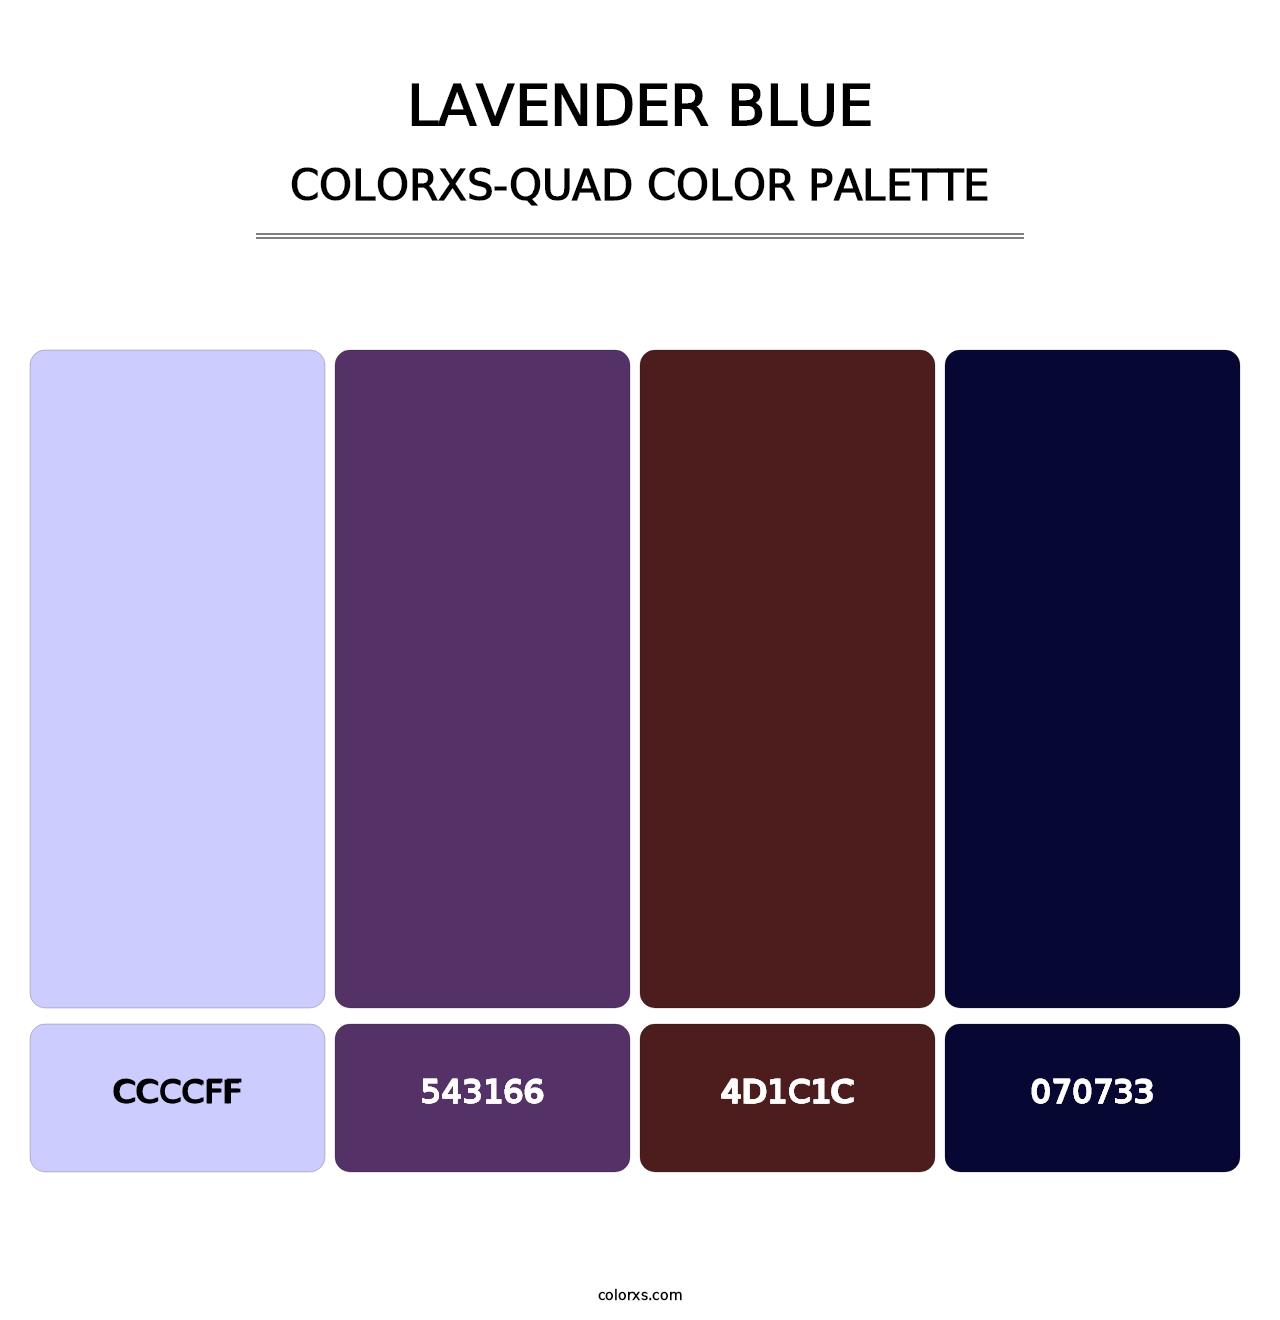 Lavender Blue - Colorxs Quad Palette